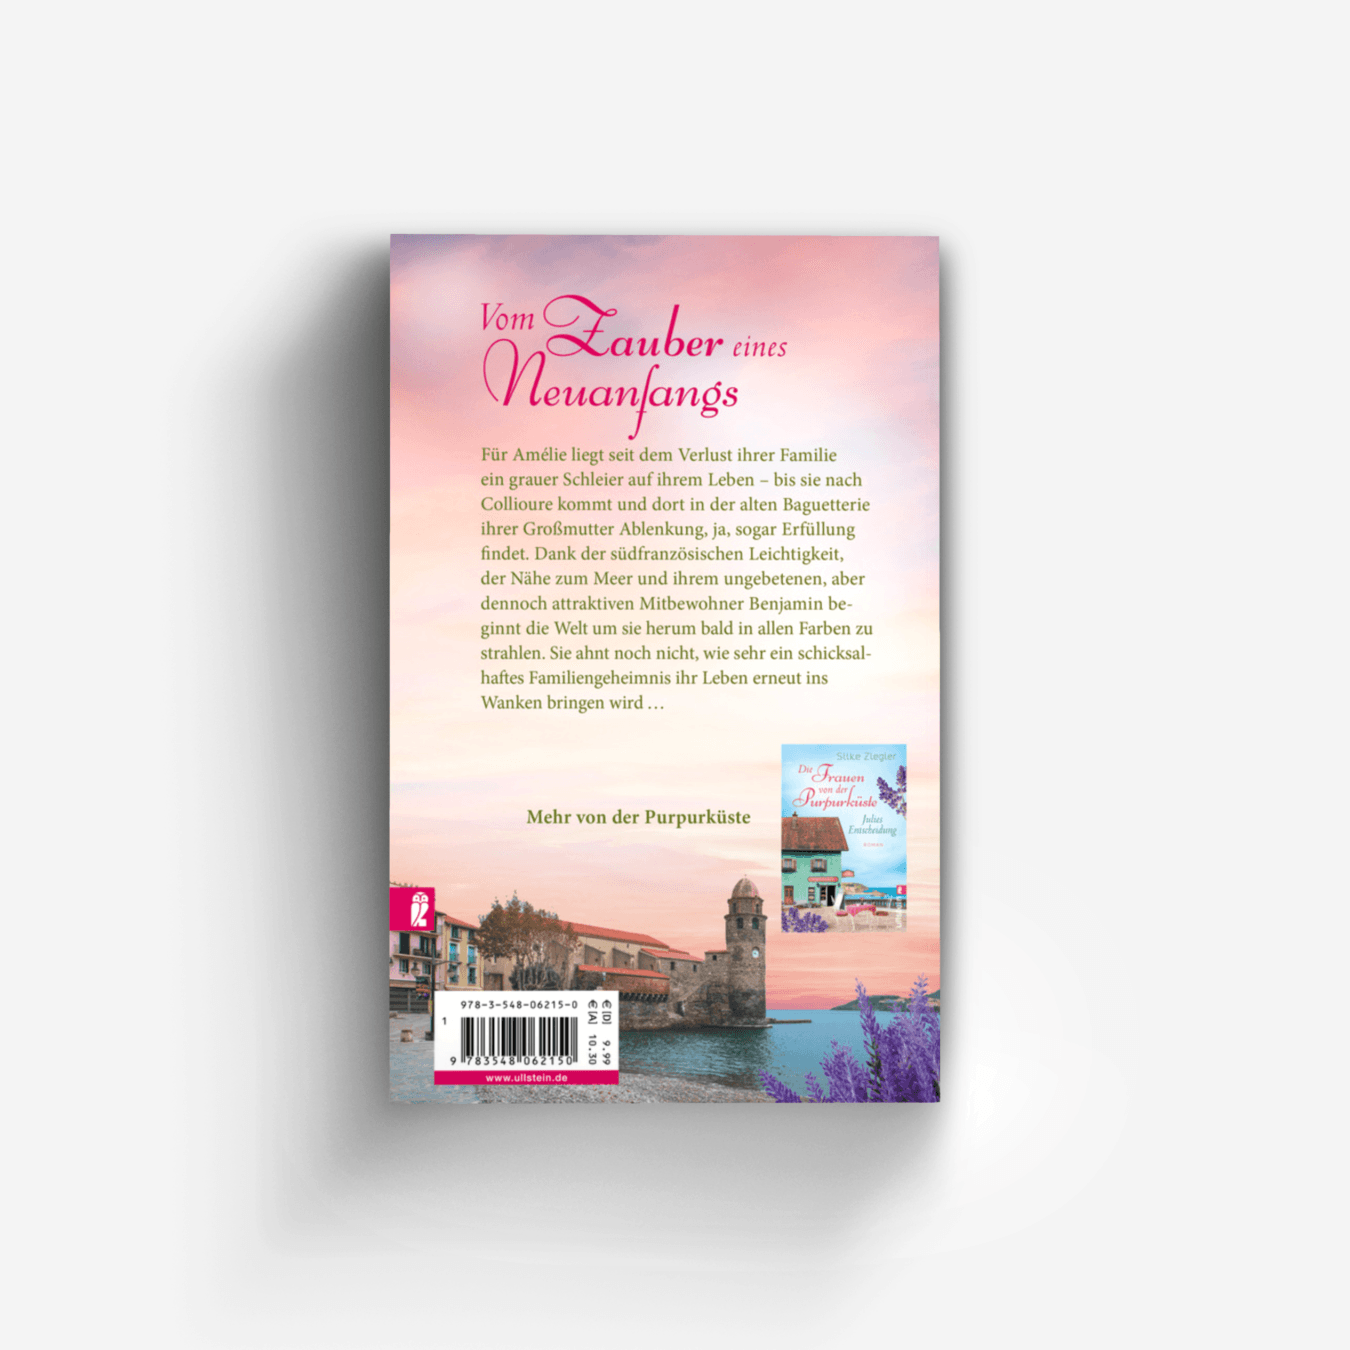 Buchcover von Die Frauen von der Purpurküste – Isabelles Geheimnis (Die Purpurküsten-Reihe 1)